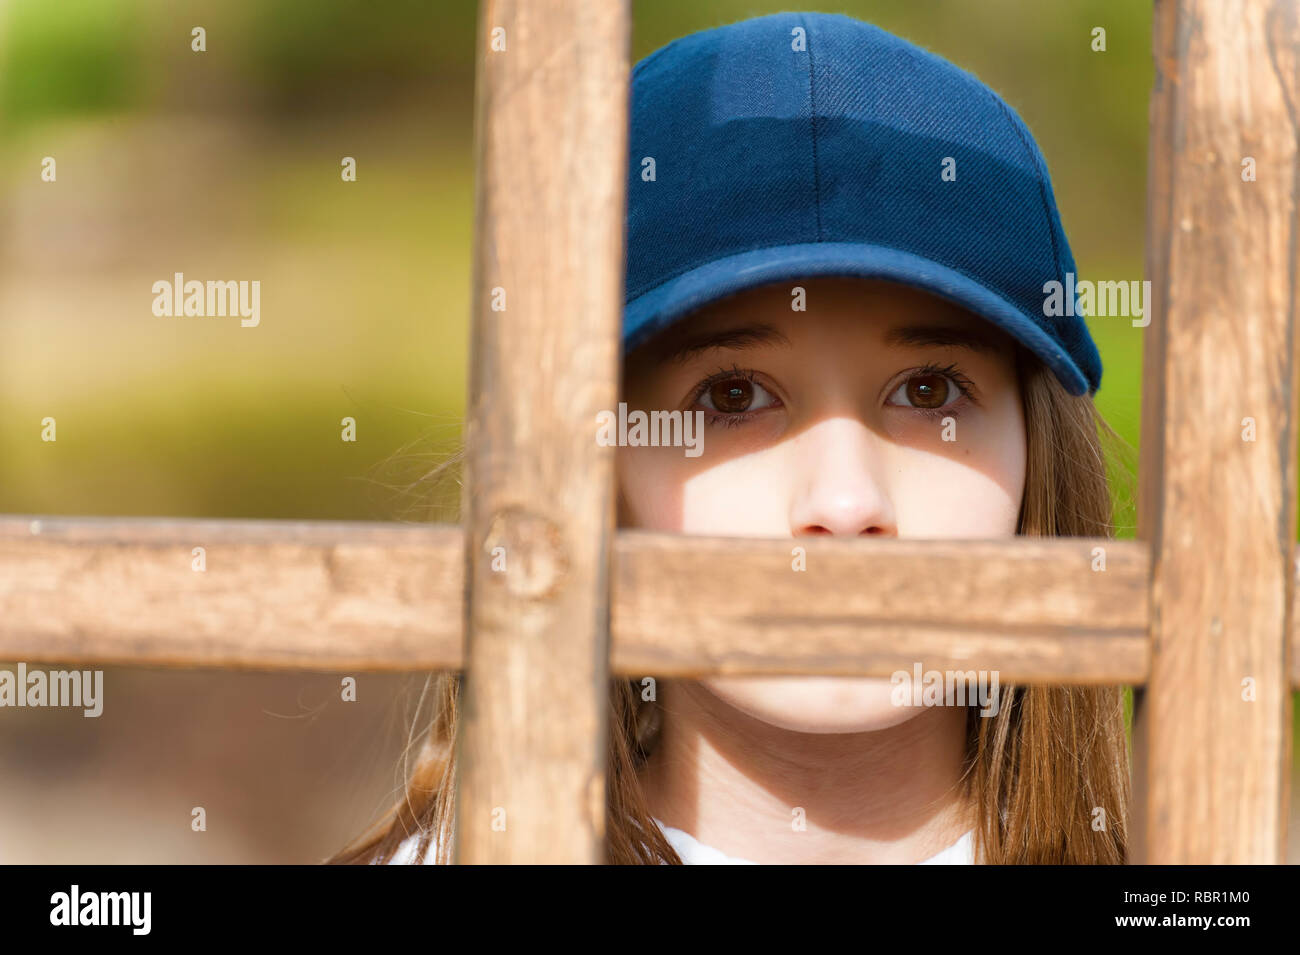 In prossimità di una giovane ragazza del peering da behine un latice in legno che indossa una sfera blu cap Foto Stock